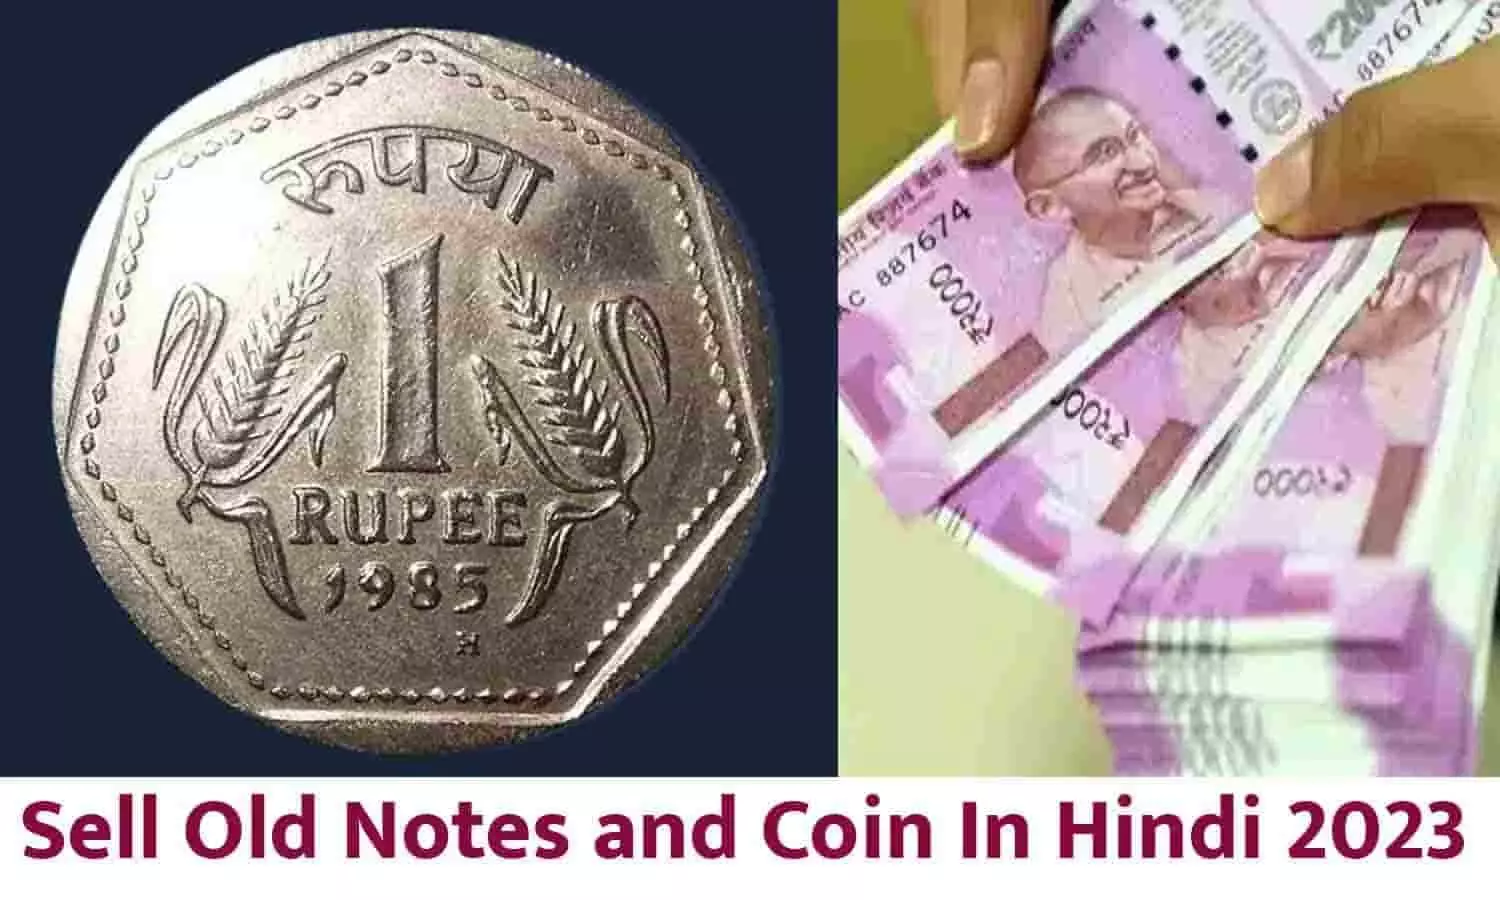 नए साल में H मार्क वाला 1 रूपए का ये सिक्का बना देगा आपको करोड़पति! हर दिन होगी ₹10000 की कमाई, फटाफट जाने